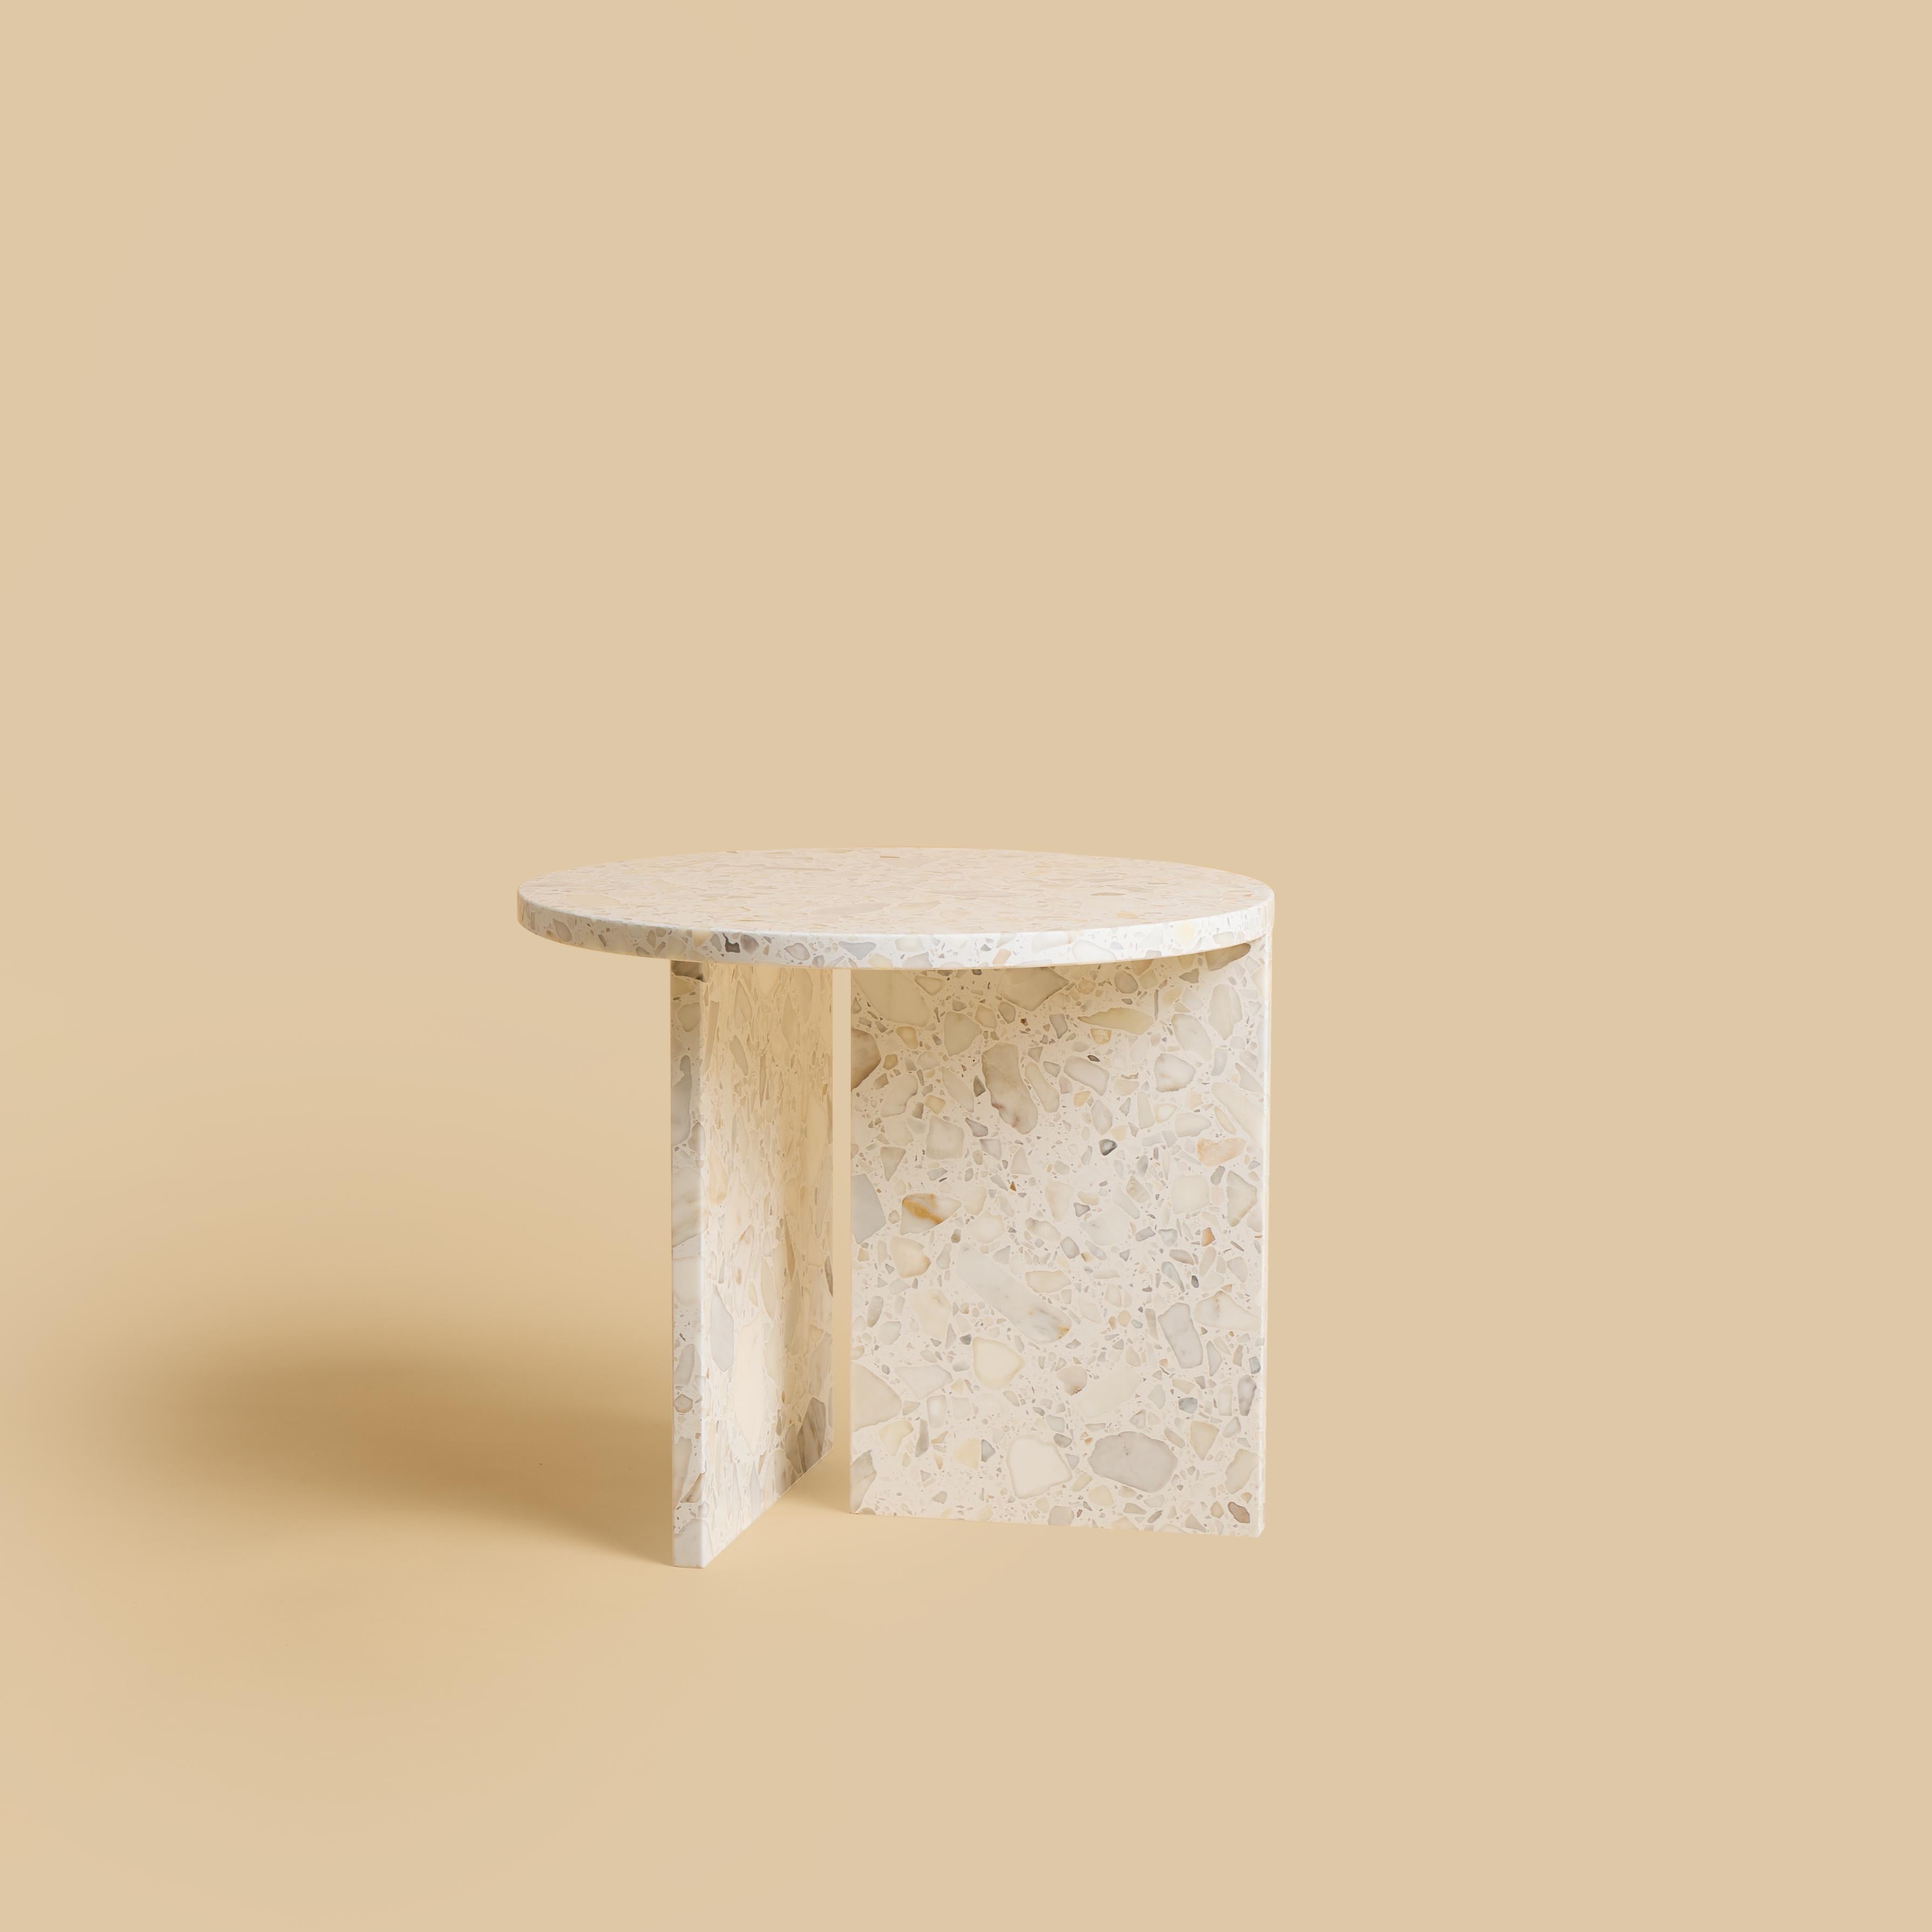 Italian Carrara Terrazzo Marble Circular Coffee Table, Made in Italy For Sale